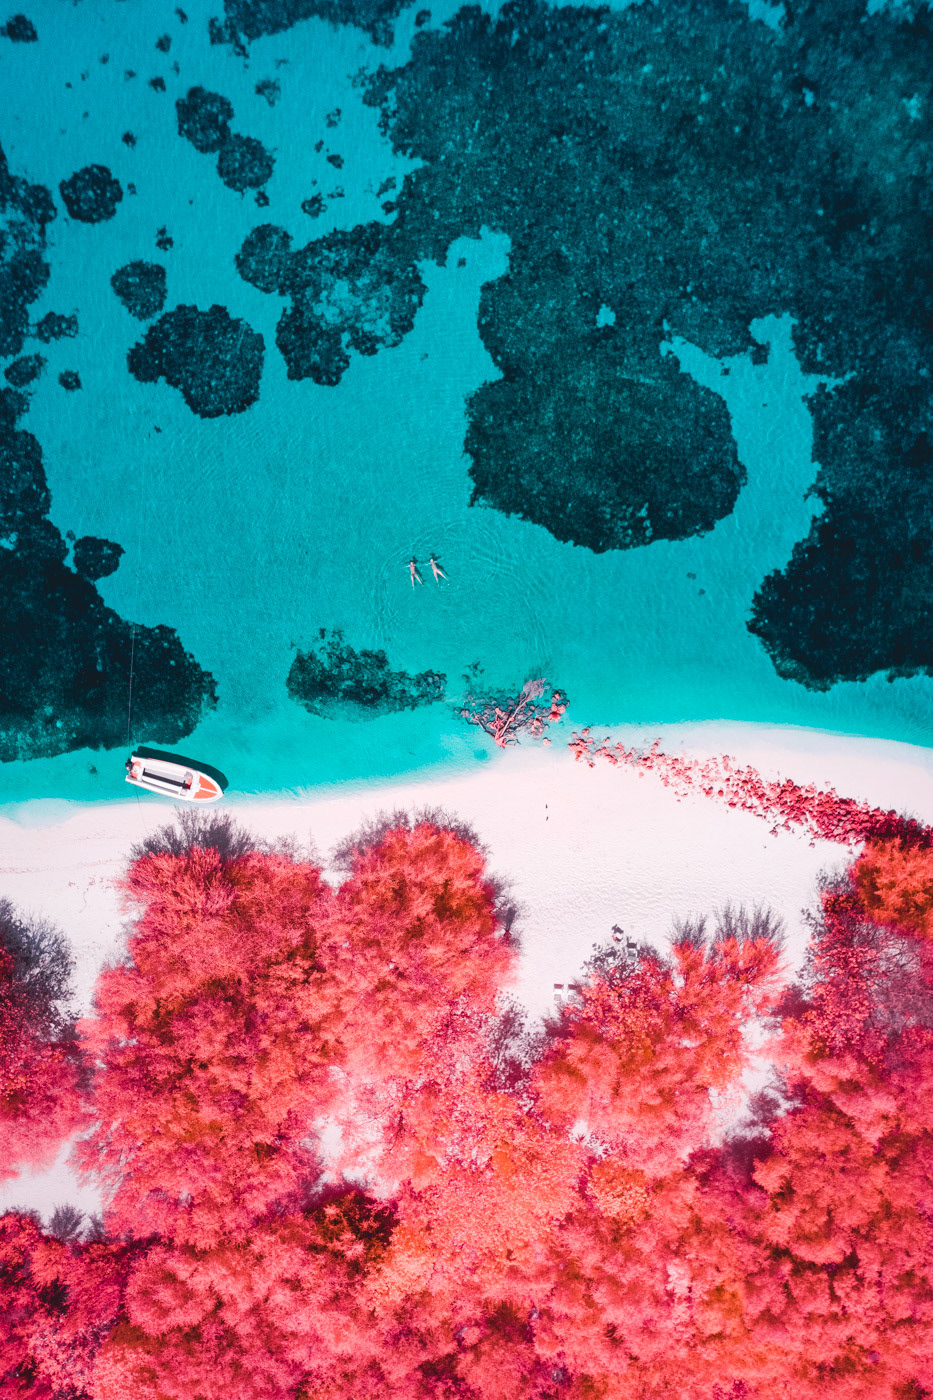 Мальдивы с высоты в инфракрасном диапазоне на снимках Паоло Петтиджани